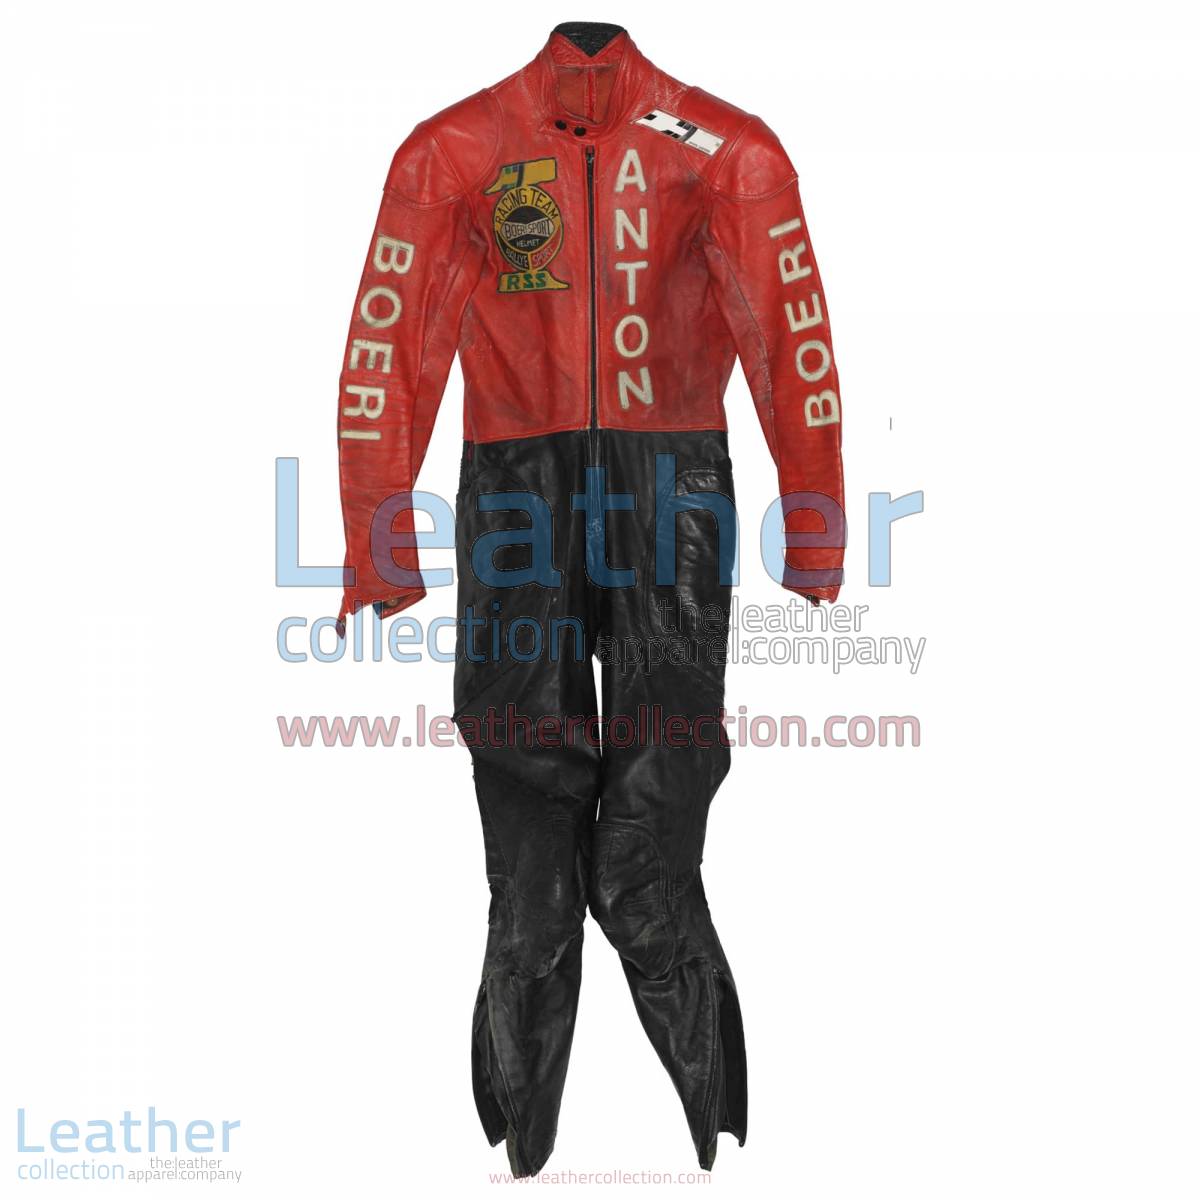 Toni Mang Kawasaki GP 1980 Racing Suit | kawasaki racing suit